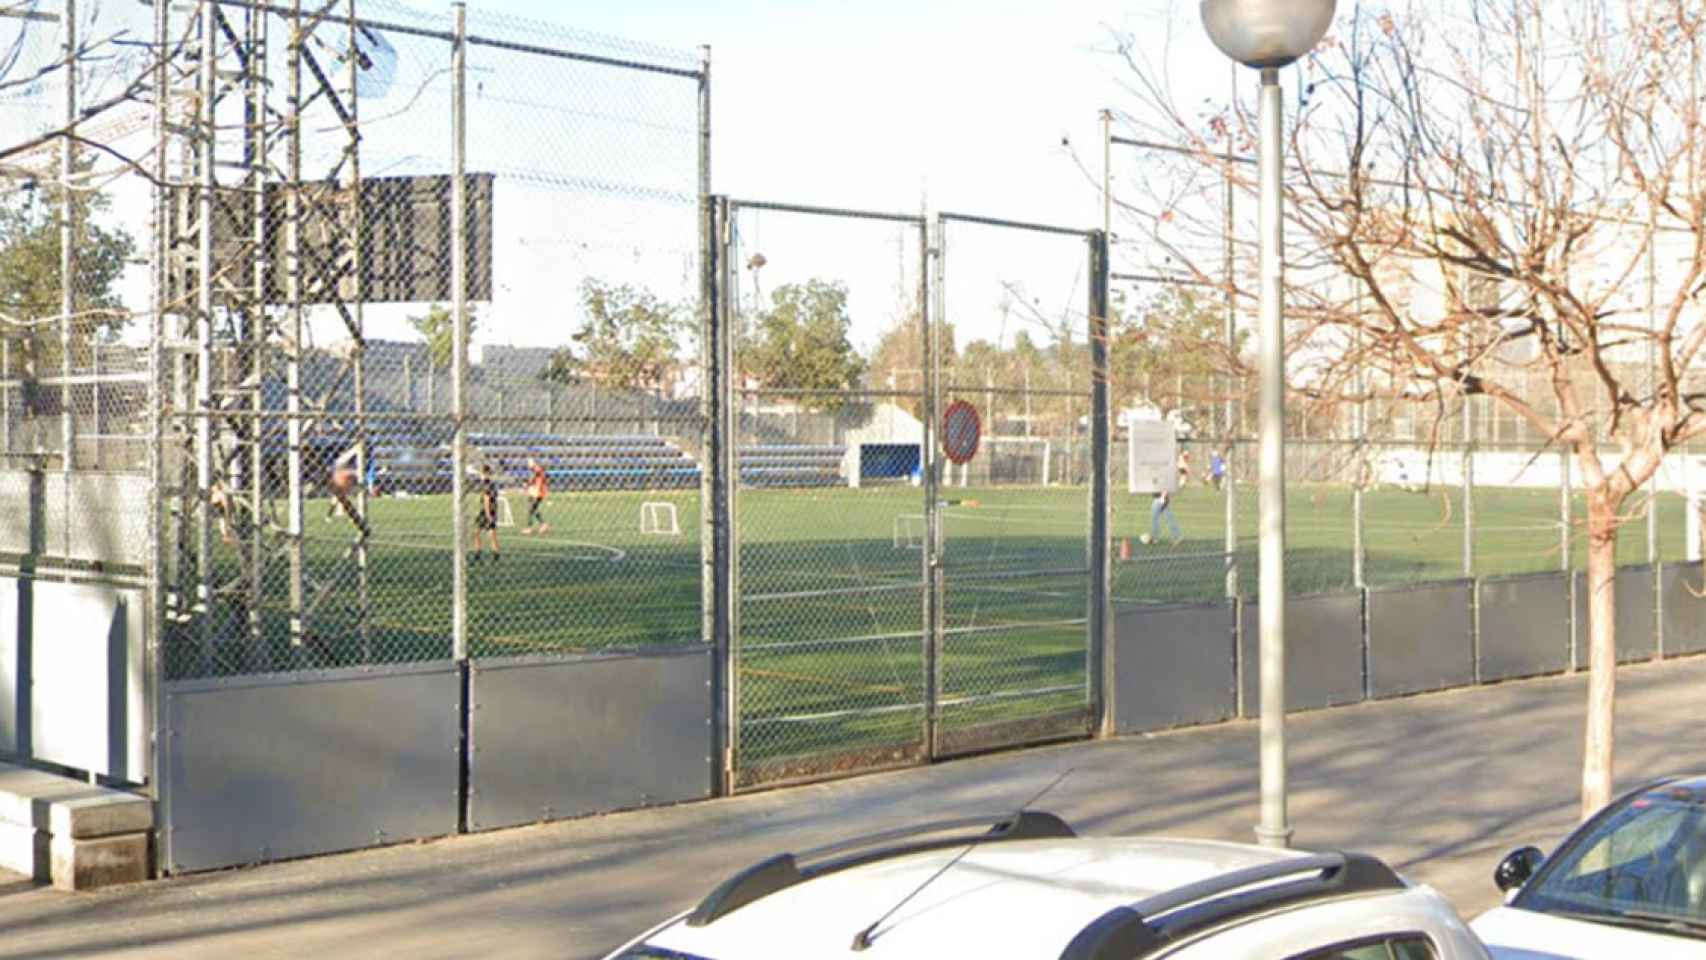 Campo Municipal de Fútbol Menorca, en el distrito de Sant Martí de Barcelona, donde ha tenido lugar el incidente / GOOGLE STREET VIEW